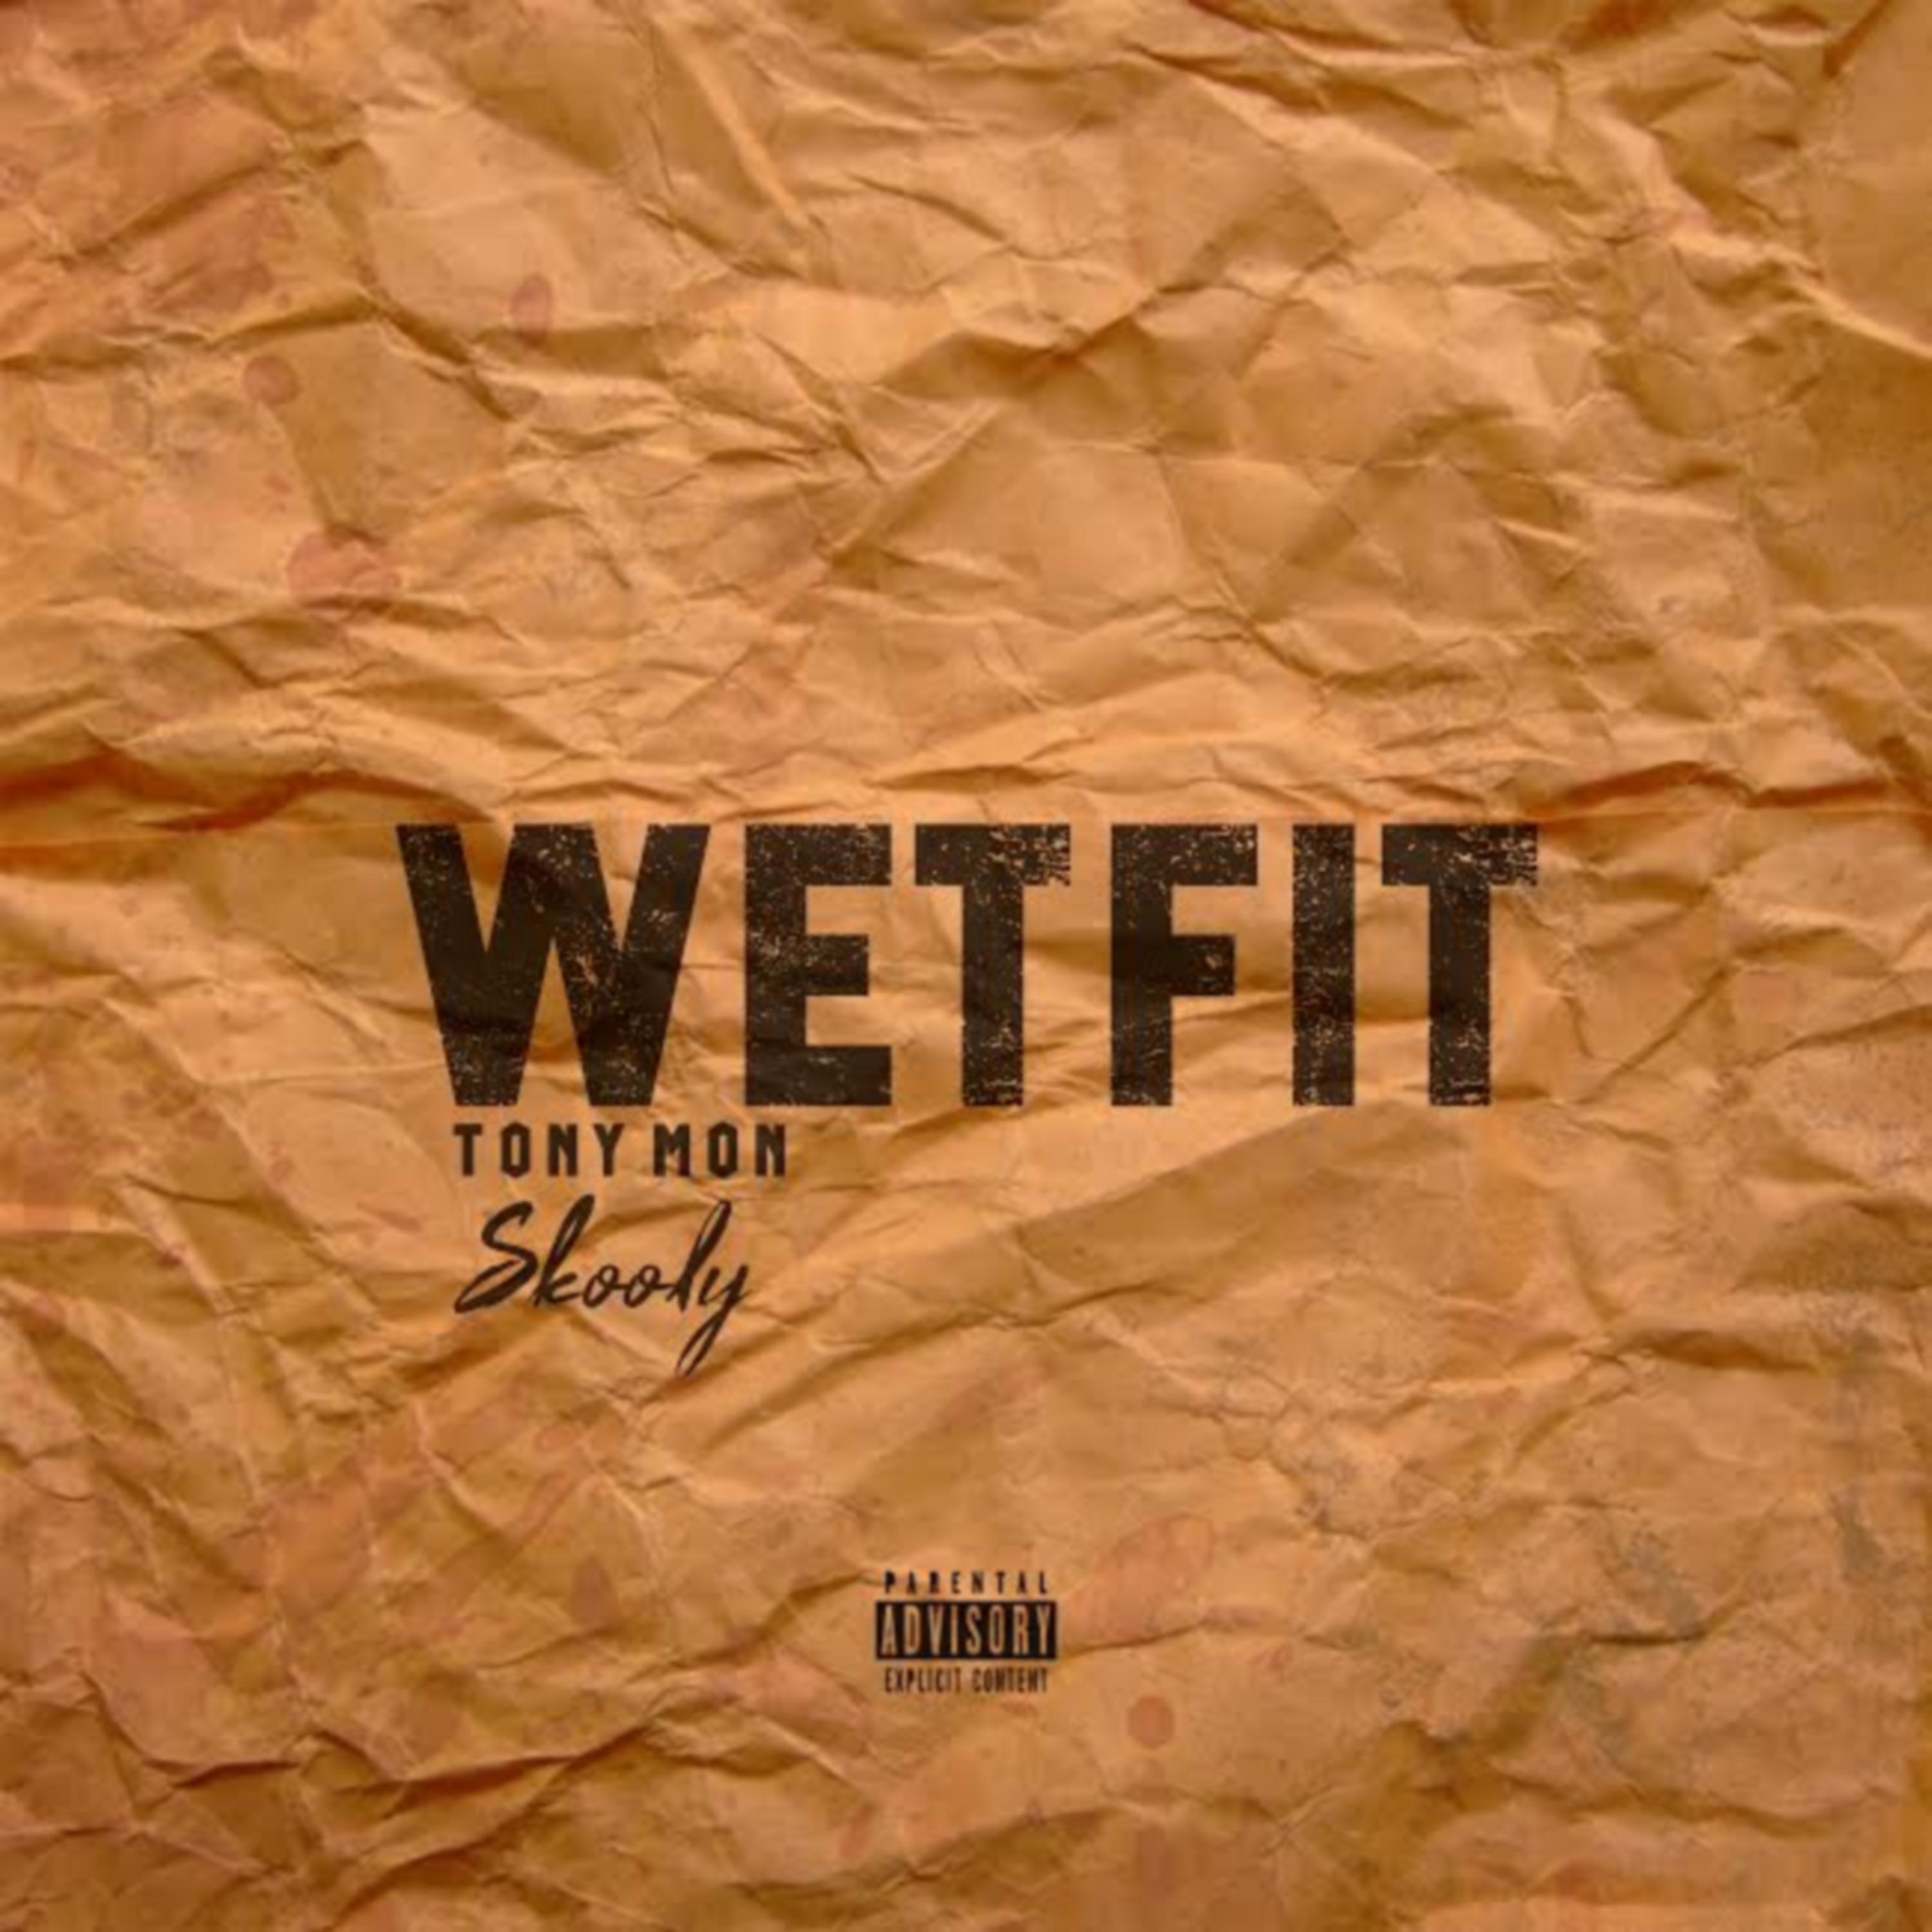 Wetfit